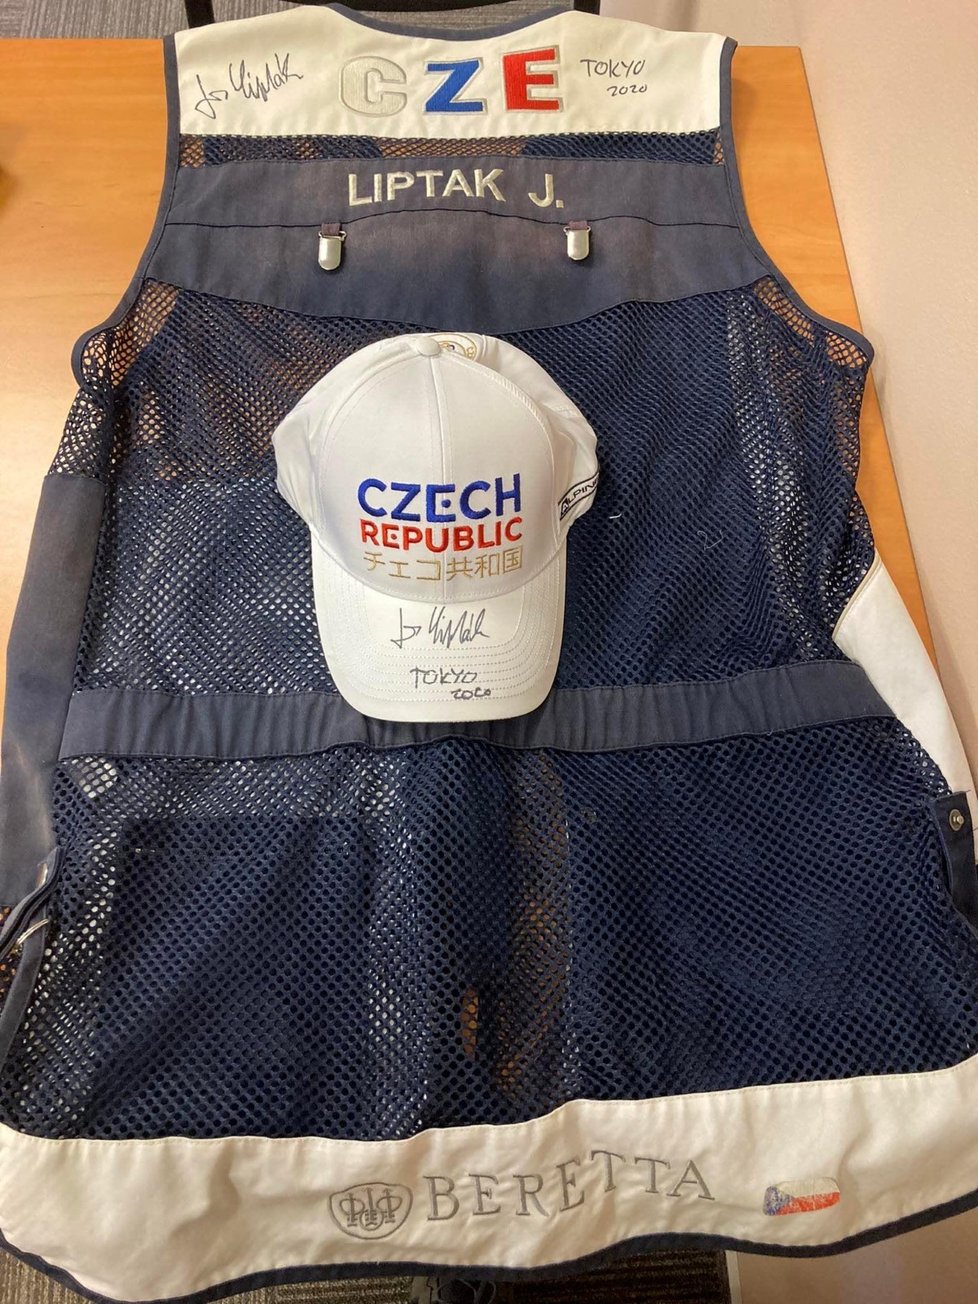 Střeleckou vestu a čepici z Tokia do aukce věnovali olympijští vítězové ve střelbě Jiří Lipták a David Kostelecký.